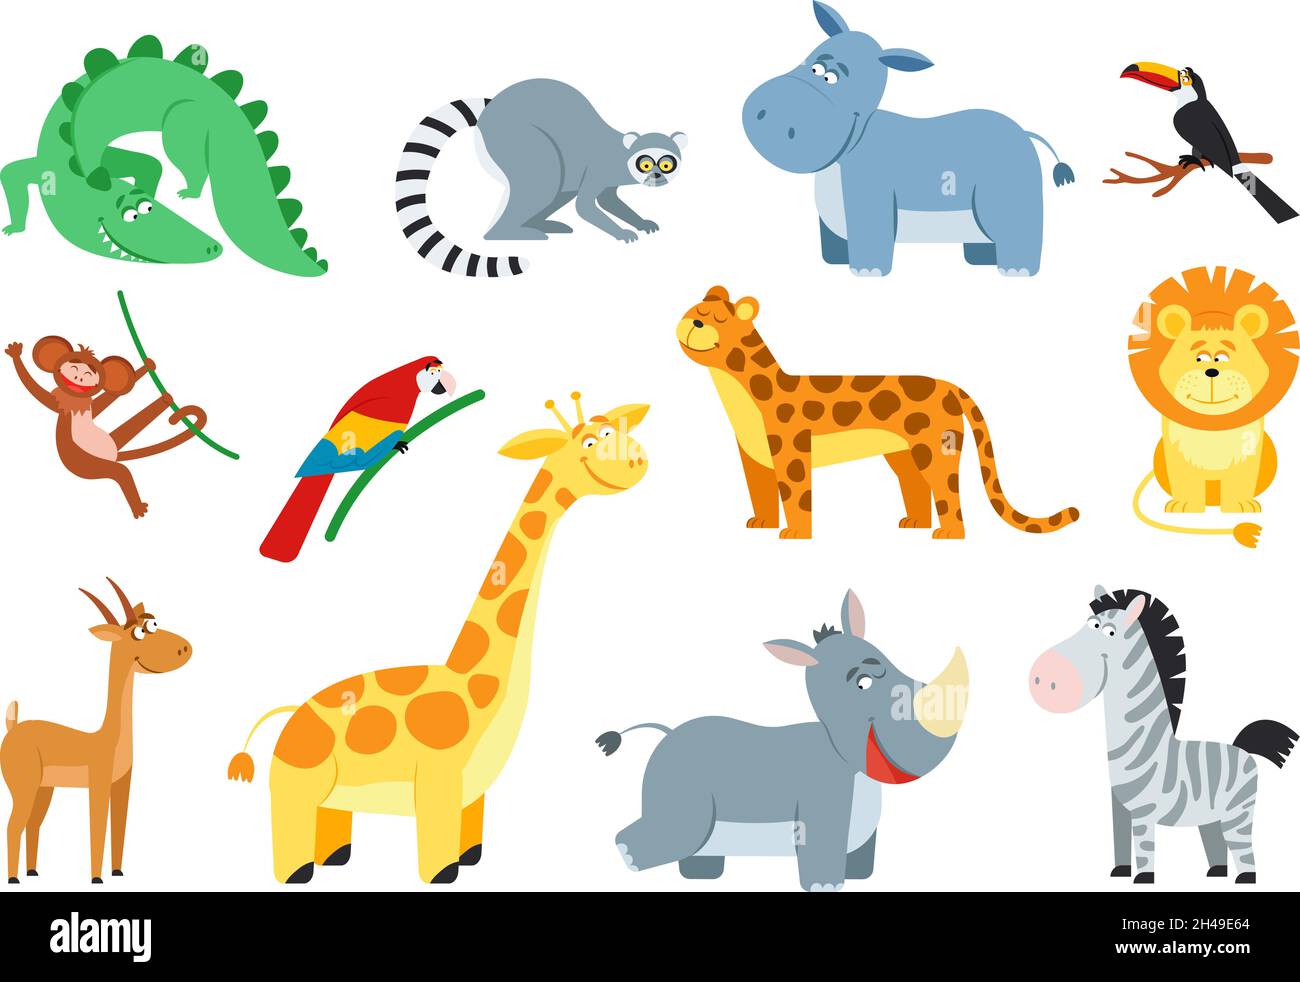 Niedliches Dschungeltier. Cartoon afrikanische Tiere, Affen Zebra Löwe. Safari Baby Kind Zoo, Savanne Tierwelt. Isolierte flache exotische anständige Vektorzeichen Stock Vektor